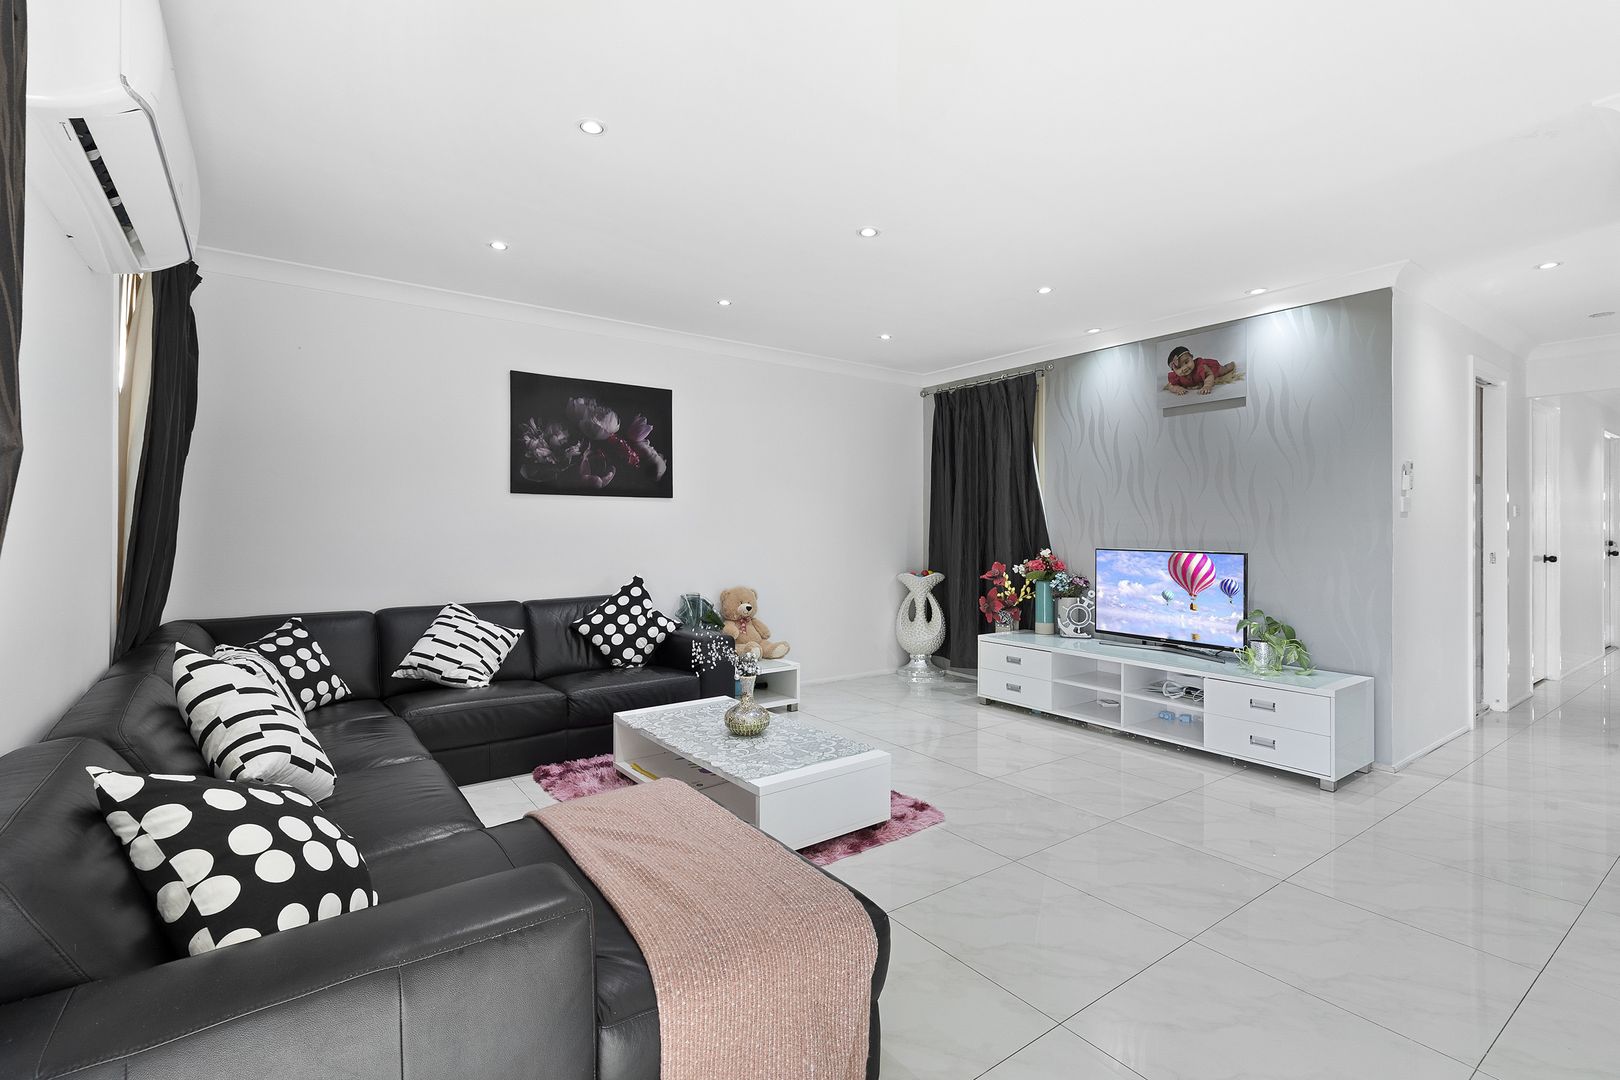 3 bedrooms Duplex in 42 Durham Street MINTO NSW, 2566